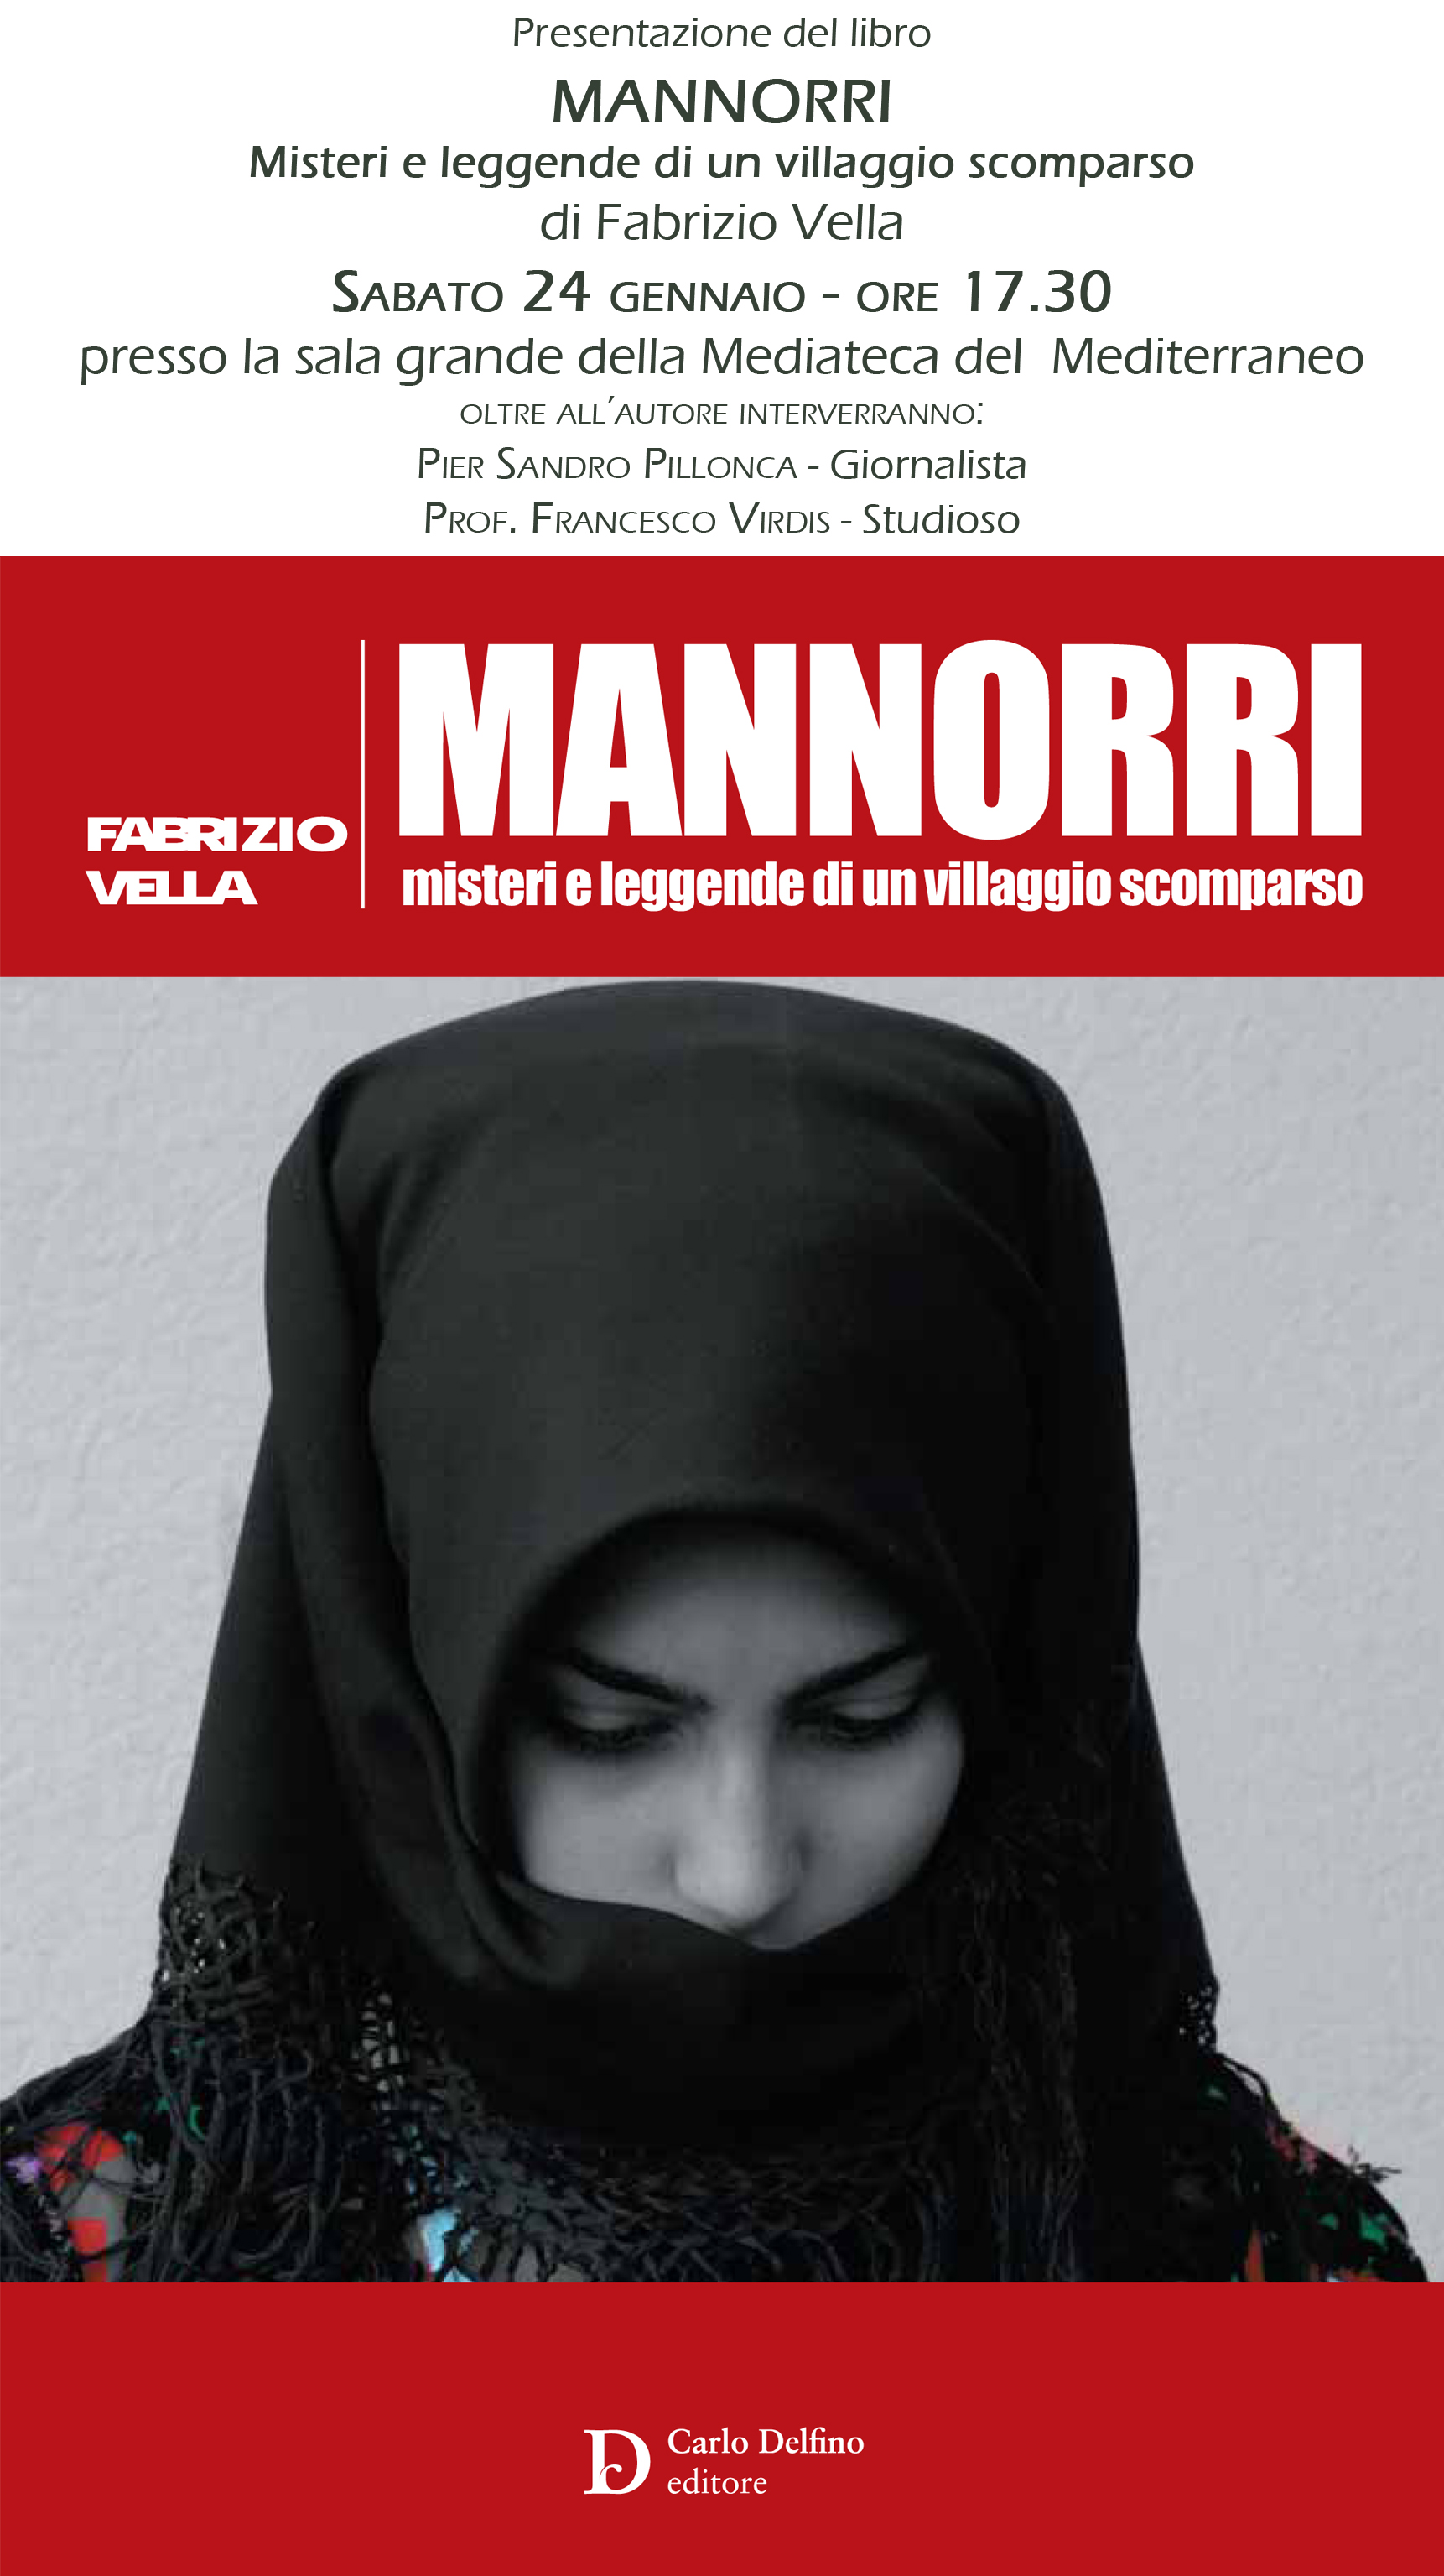 Cagliari sabato 24 gennaio 2015 al MEM sarà presentato il libro “Mannorri. Misteri e leggende di un villaggio scomparso” Delfino editore.